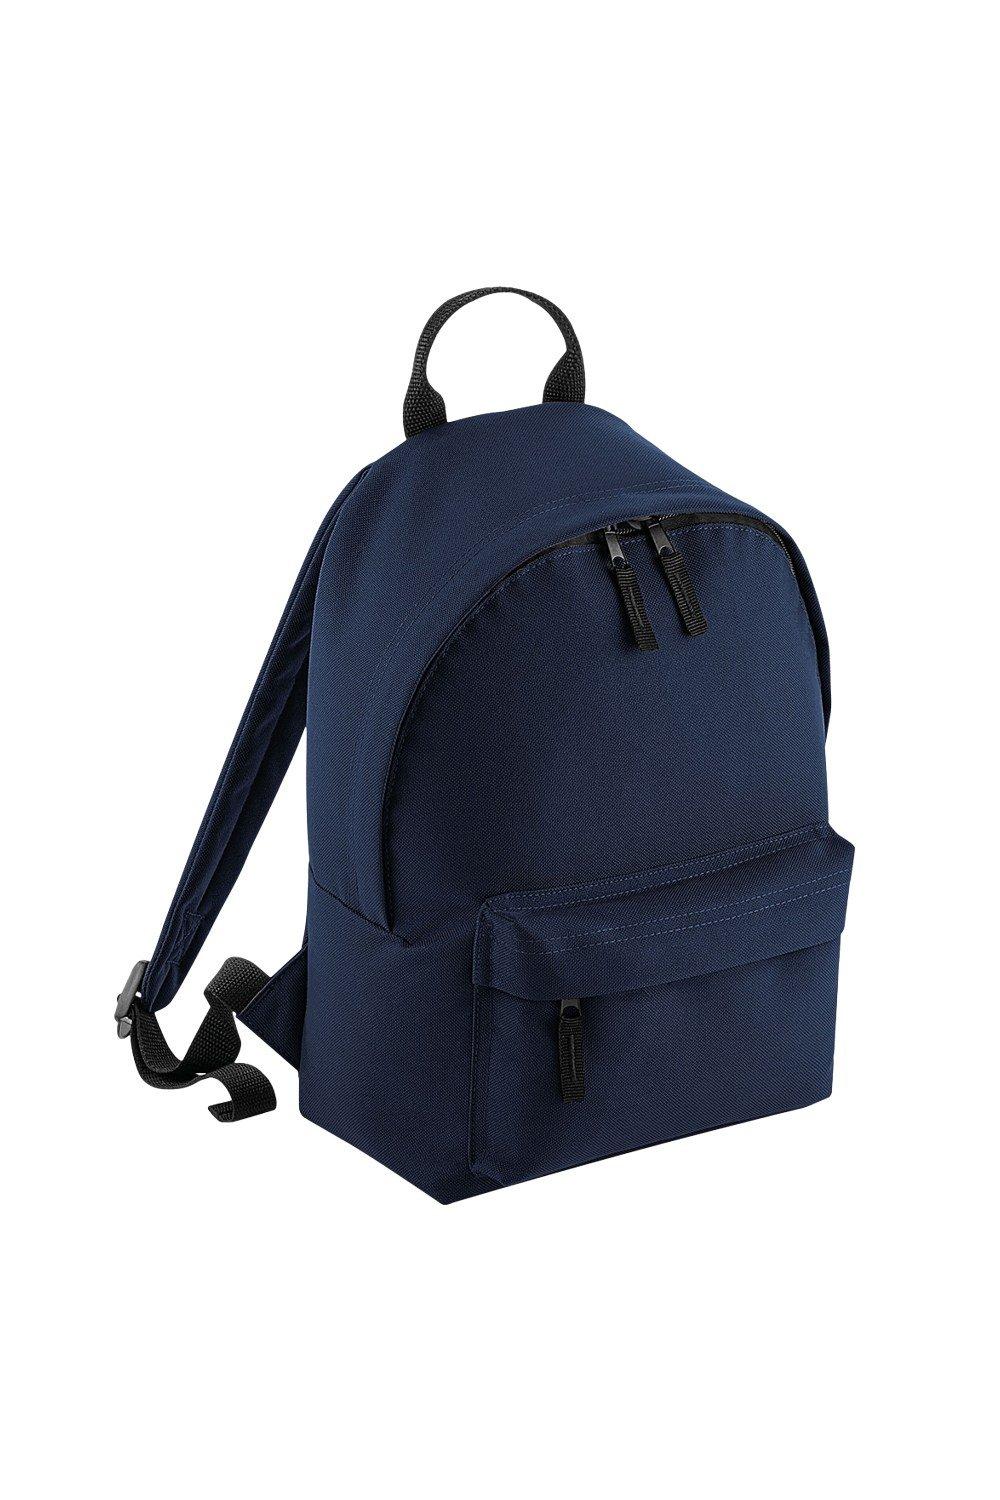 Модный мини-рюкзак Bagbase, темно-синий